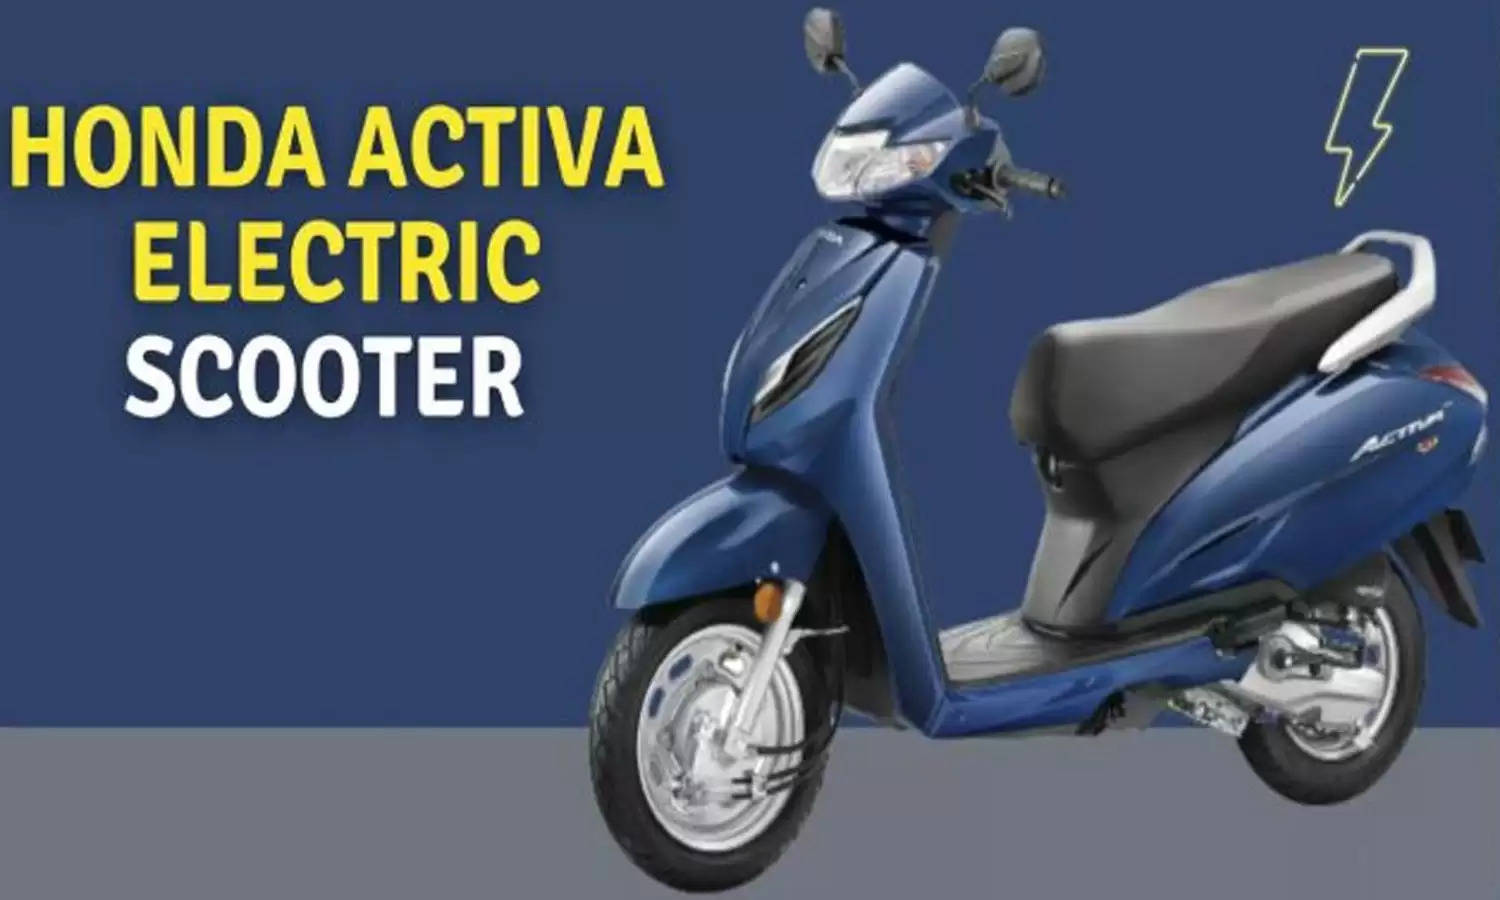 Honda की Electric Activa को घर ले आएं मात्र 18 हजार रुपये में, जल्दी से जानें पूरी डिटेल्स